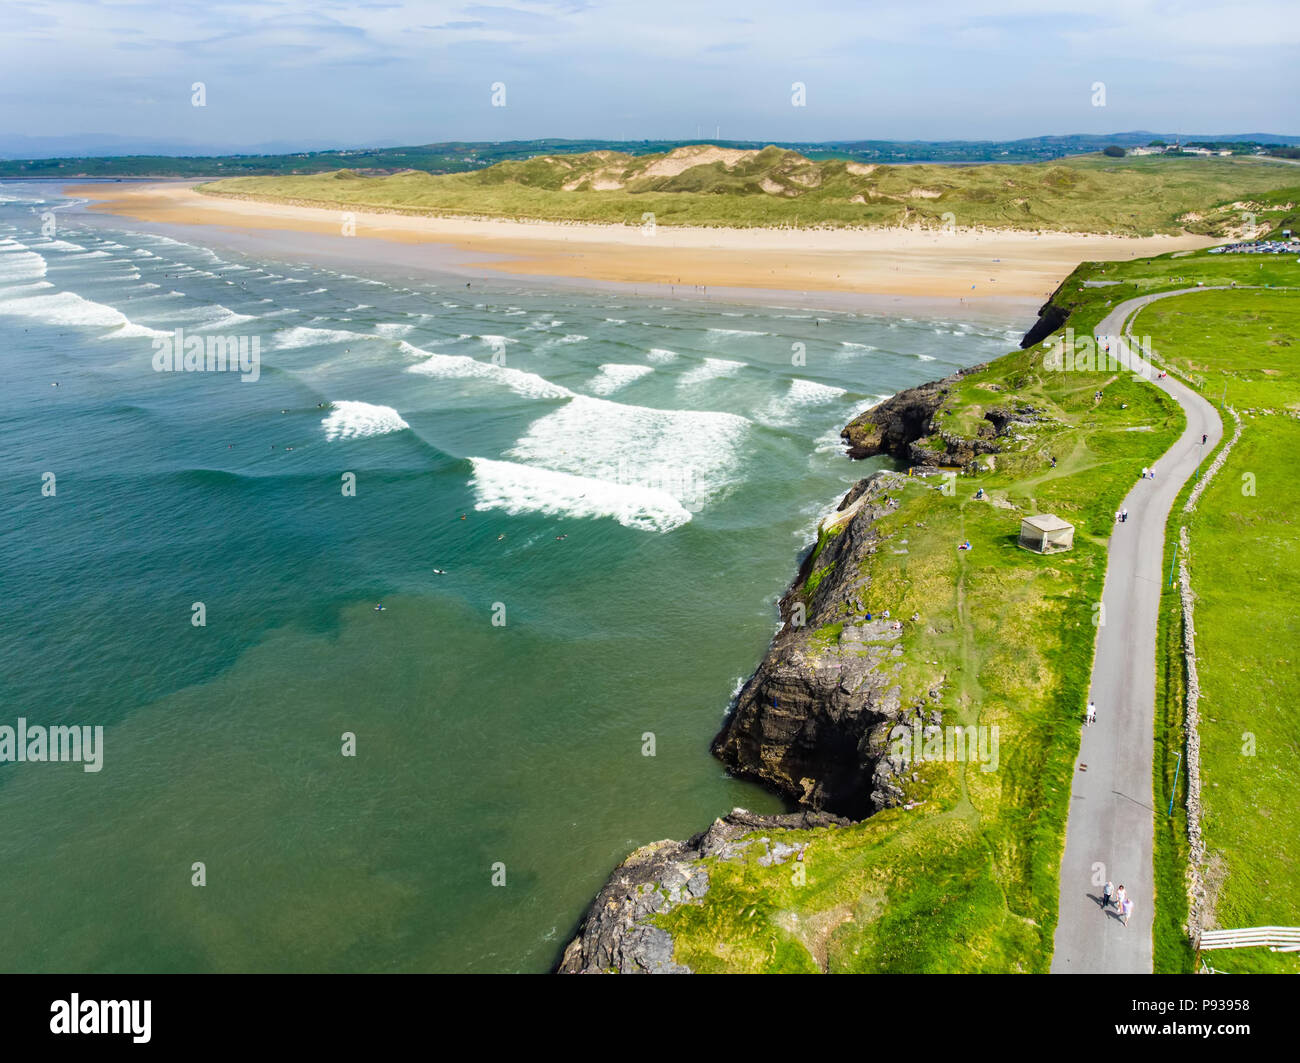 Spektakuläre Tullan Strand, einem der berühmten Donegal Surf Strände, eine malerische zurück Tropfen durch die vorgesehenen Sligo-Leitrim Berge eingerahmt. Breite, flache San Stockfoto